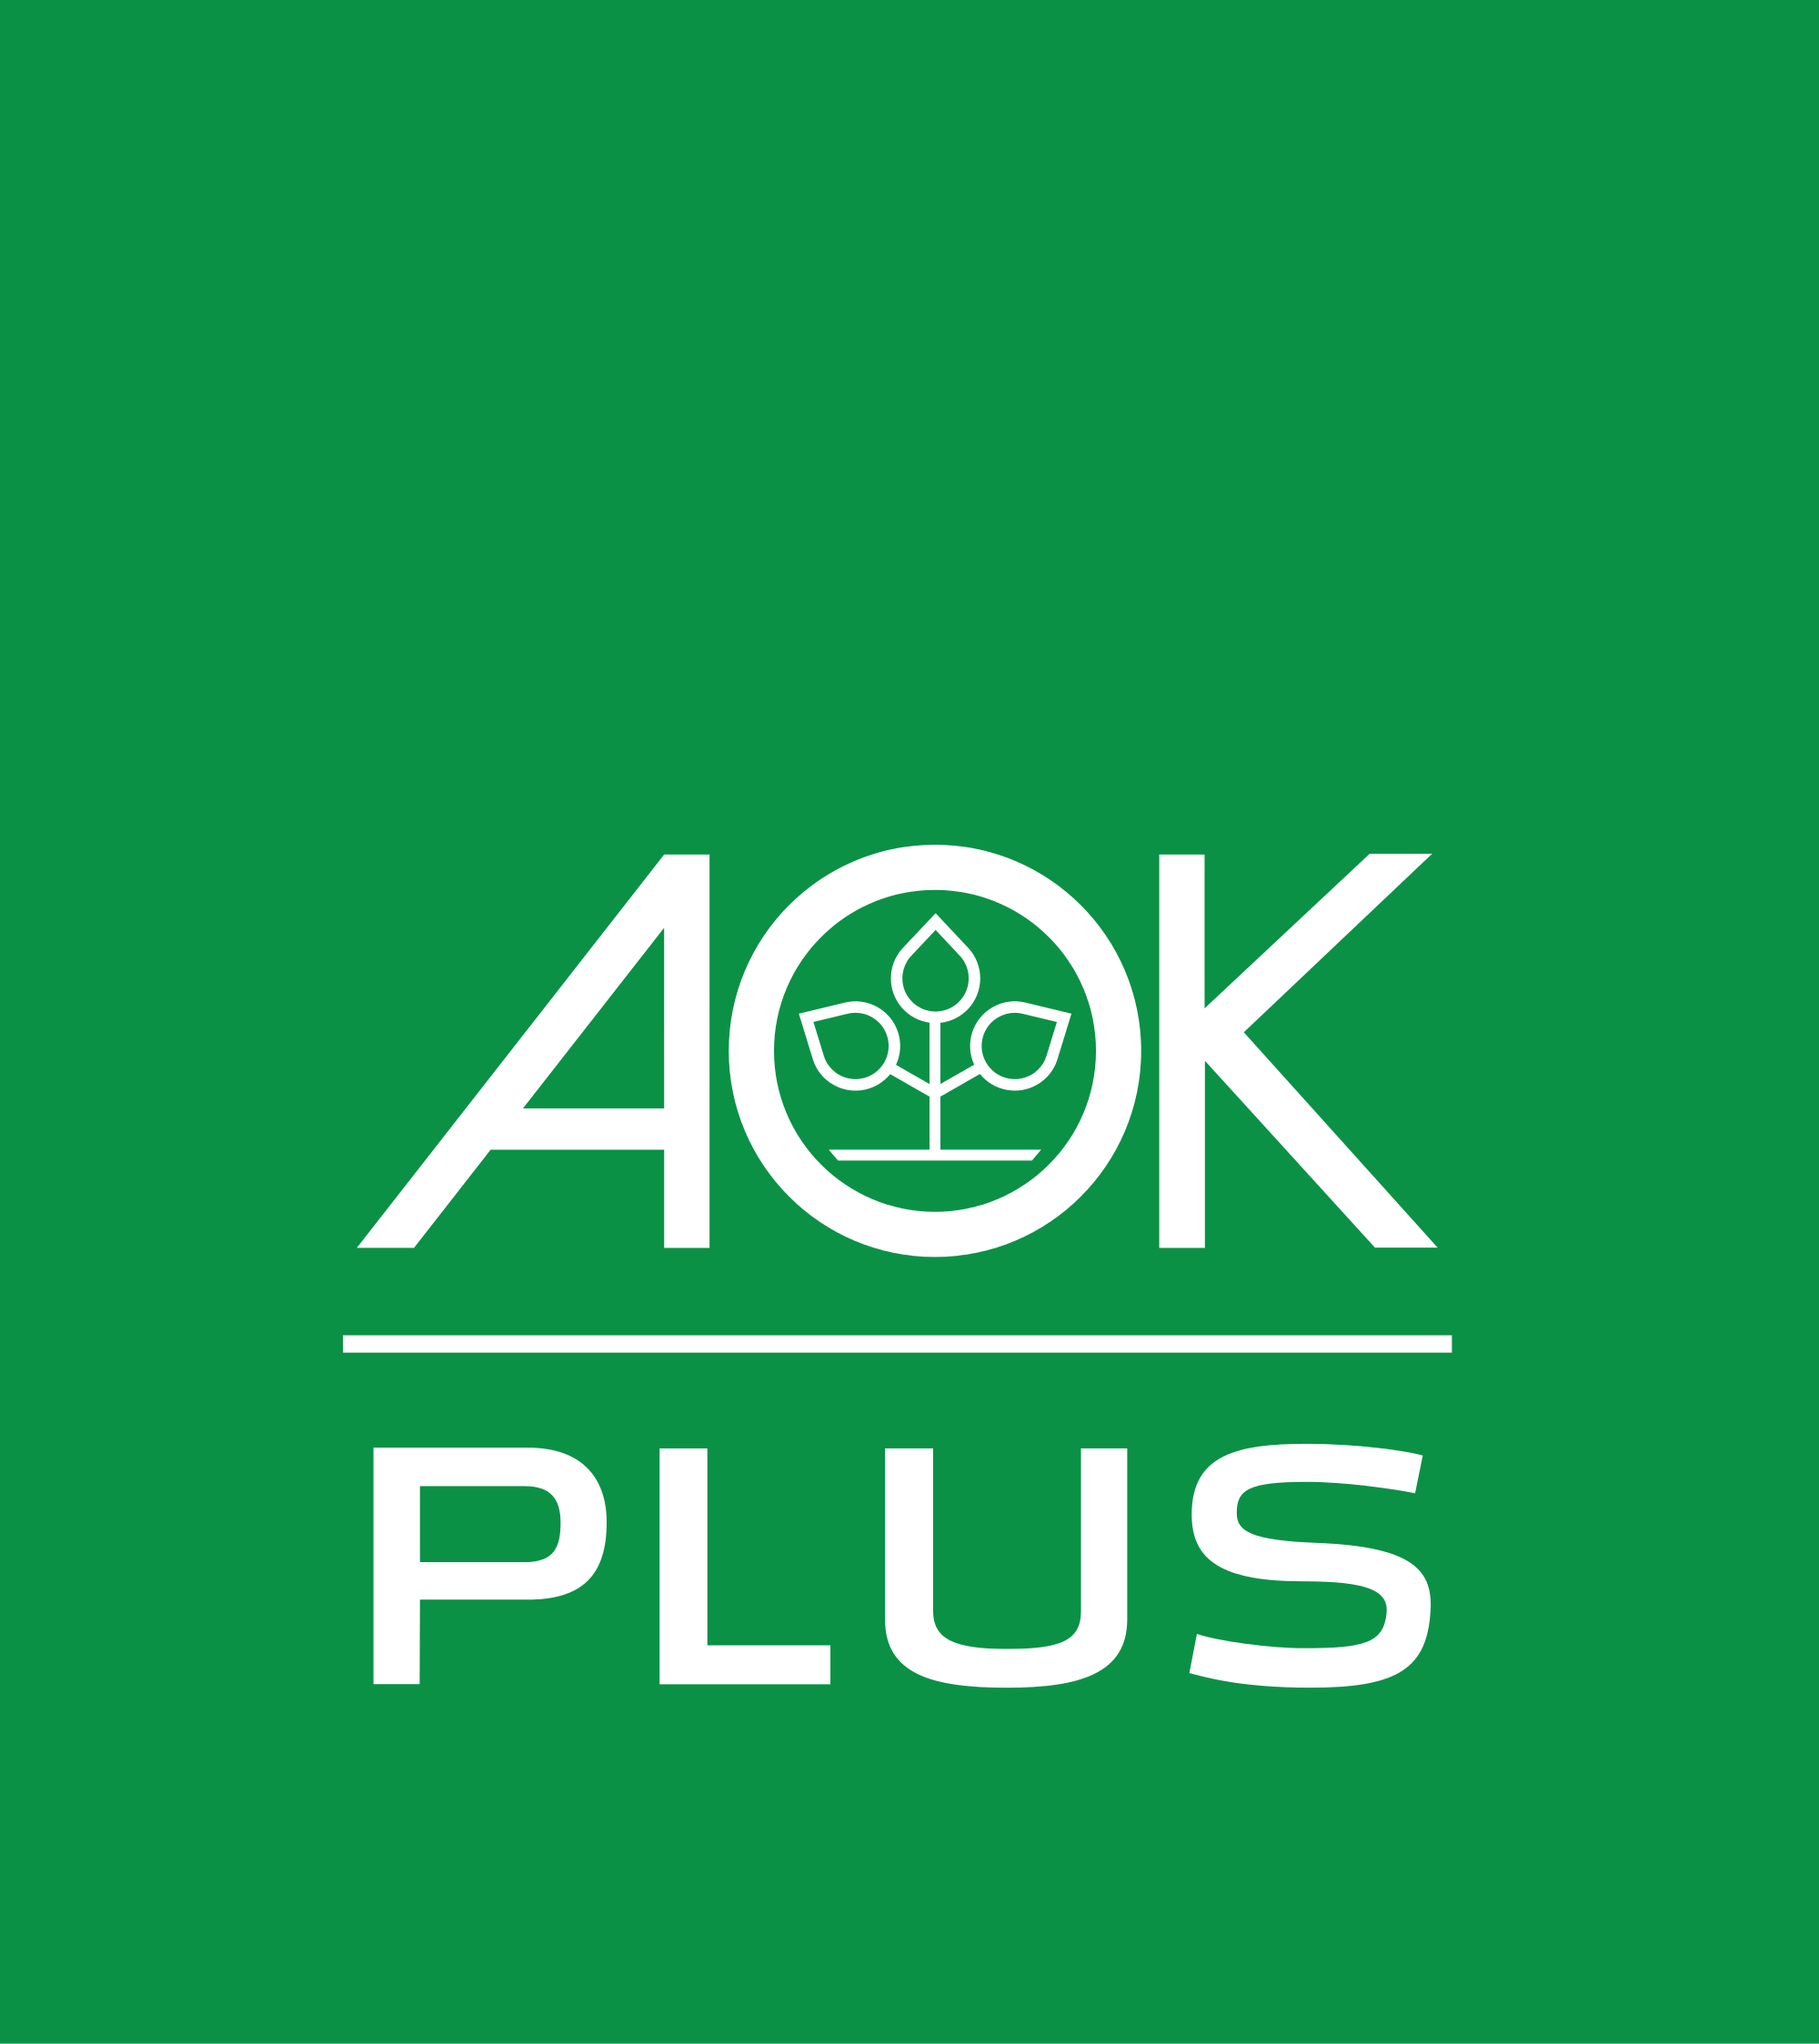 AO Kerkyra Logo.svg